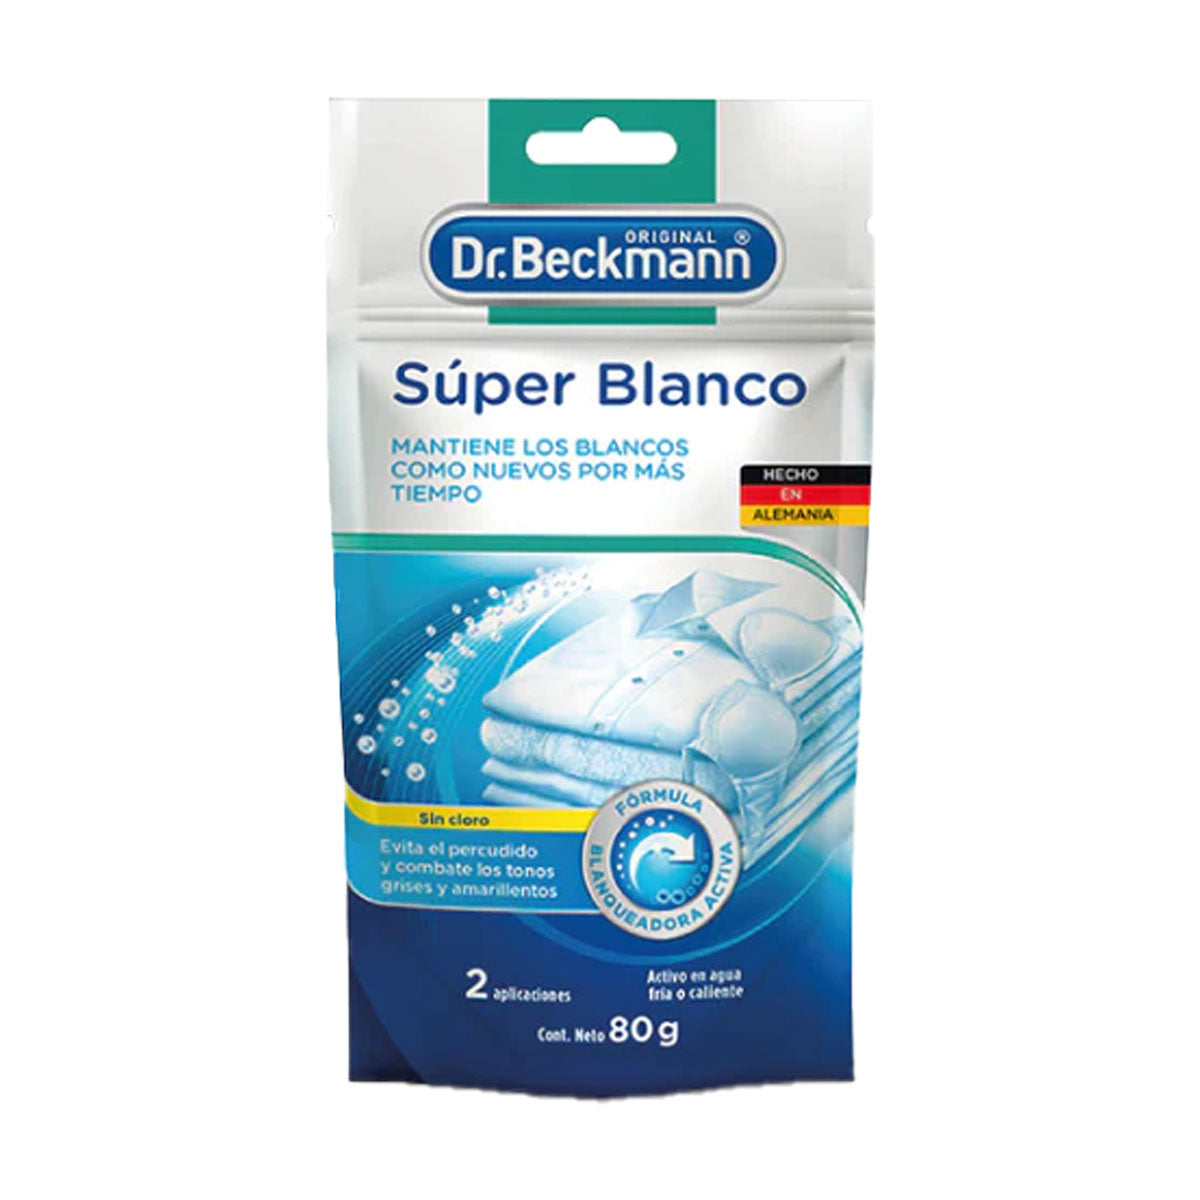 Blanqueador de Ropa Súper Blanco 1 bolsita de 80 gr Dr. Beckmann. Producto Alemán Sustentable